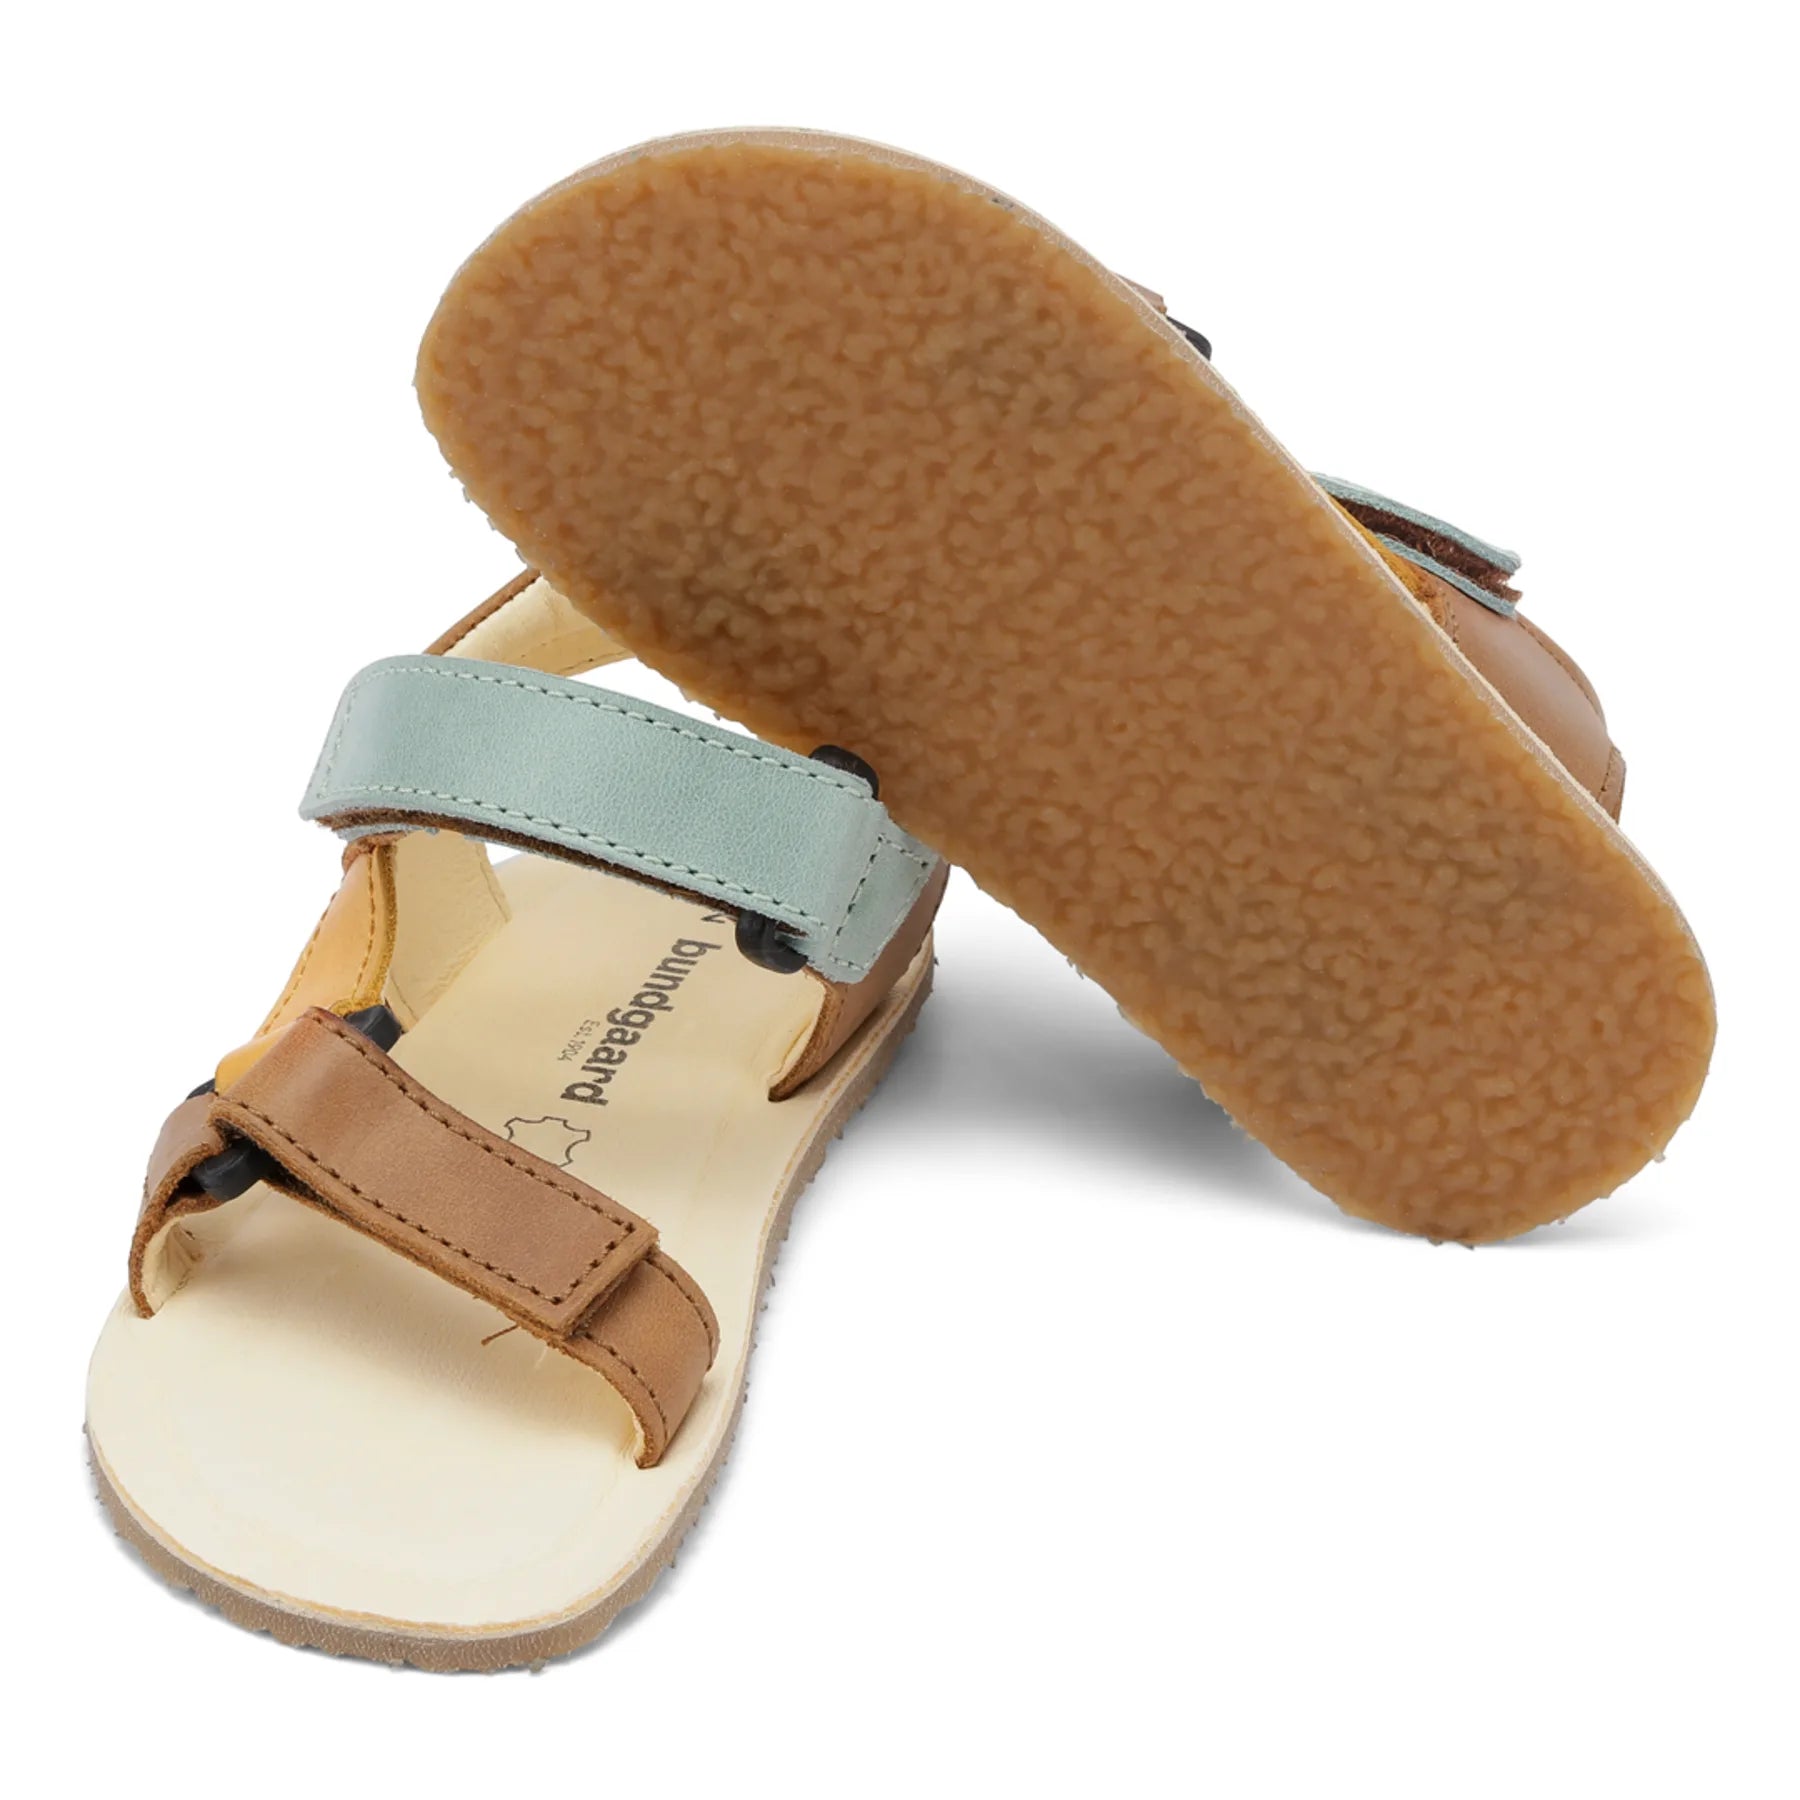 Bundgaard Skye barfods sandaler til børn i farven tan, par